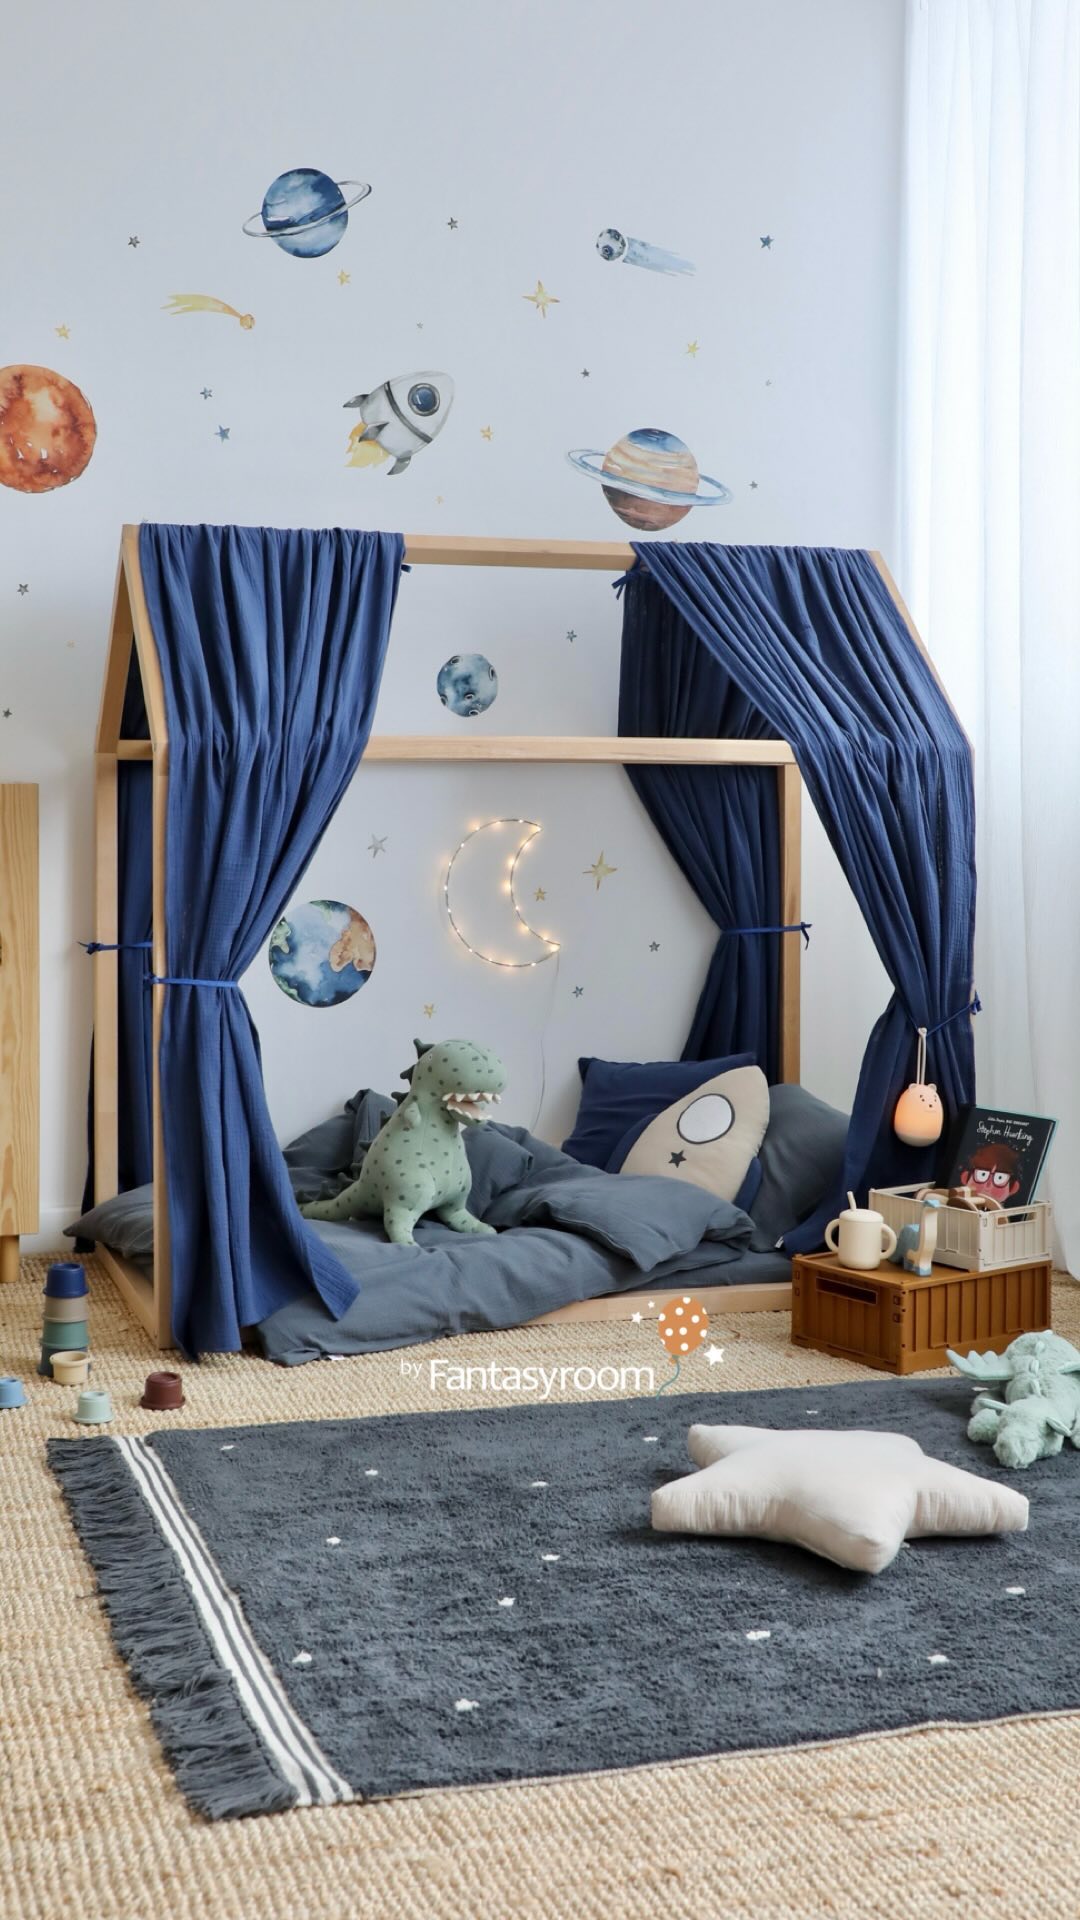 Kennt ihr schon unser Weltall Kinderzimmer? 🚀🌎🪐 Es gibt coole Wandsticker aus Stoff mit Planeten, Sternen und Rakete, und ein gemütliches Hausbett mit kuscheligen Textilien aus Bio-Baumwolle. 😴

Alles in stilvoller, tiefer Farbkombi Blau, Grau und Beige, die für eine Abenteuer Stimmung im Kinderzimmer sorgt! 
Wie gefällt es euch? 🤩

Diese und viele weitere Kinderzimmer Ideen haben wir im Shop für euch!
𝘄𝘄𝘄.𝗺𝘆-𝗳𝗮𝗻𝘁𝗮𝘀𝘆𝗿𝗼𝗼𝗺.𝗱𝗲 ✨
.
.
.
#myfantasyroom #fantasyroomdeko #dinkiballoon #handmade #organic #madeingermany #hausbett #kinderbett #hausbetthimmel #hausbettdeko #weltall #weltraum #wandsticker #wandgestaltung #toddlerroom #childrensroom #kleinkindzimmer #byfantasyroom #handarbeit #kinderzimmer #kinderzimmerdeko #kinderzimmerinspo #kidsroom #kidsinterior #kidsroominterior #kidsroomstyling #childrendecor #childreninterior #kidsdecor